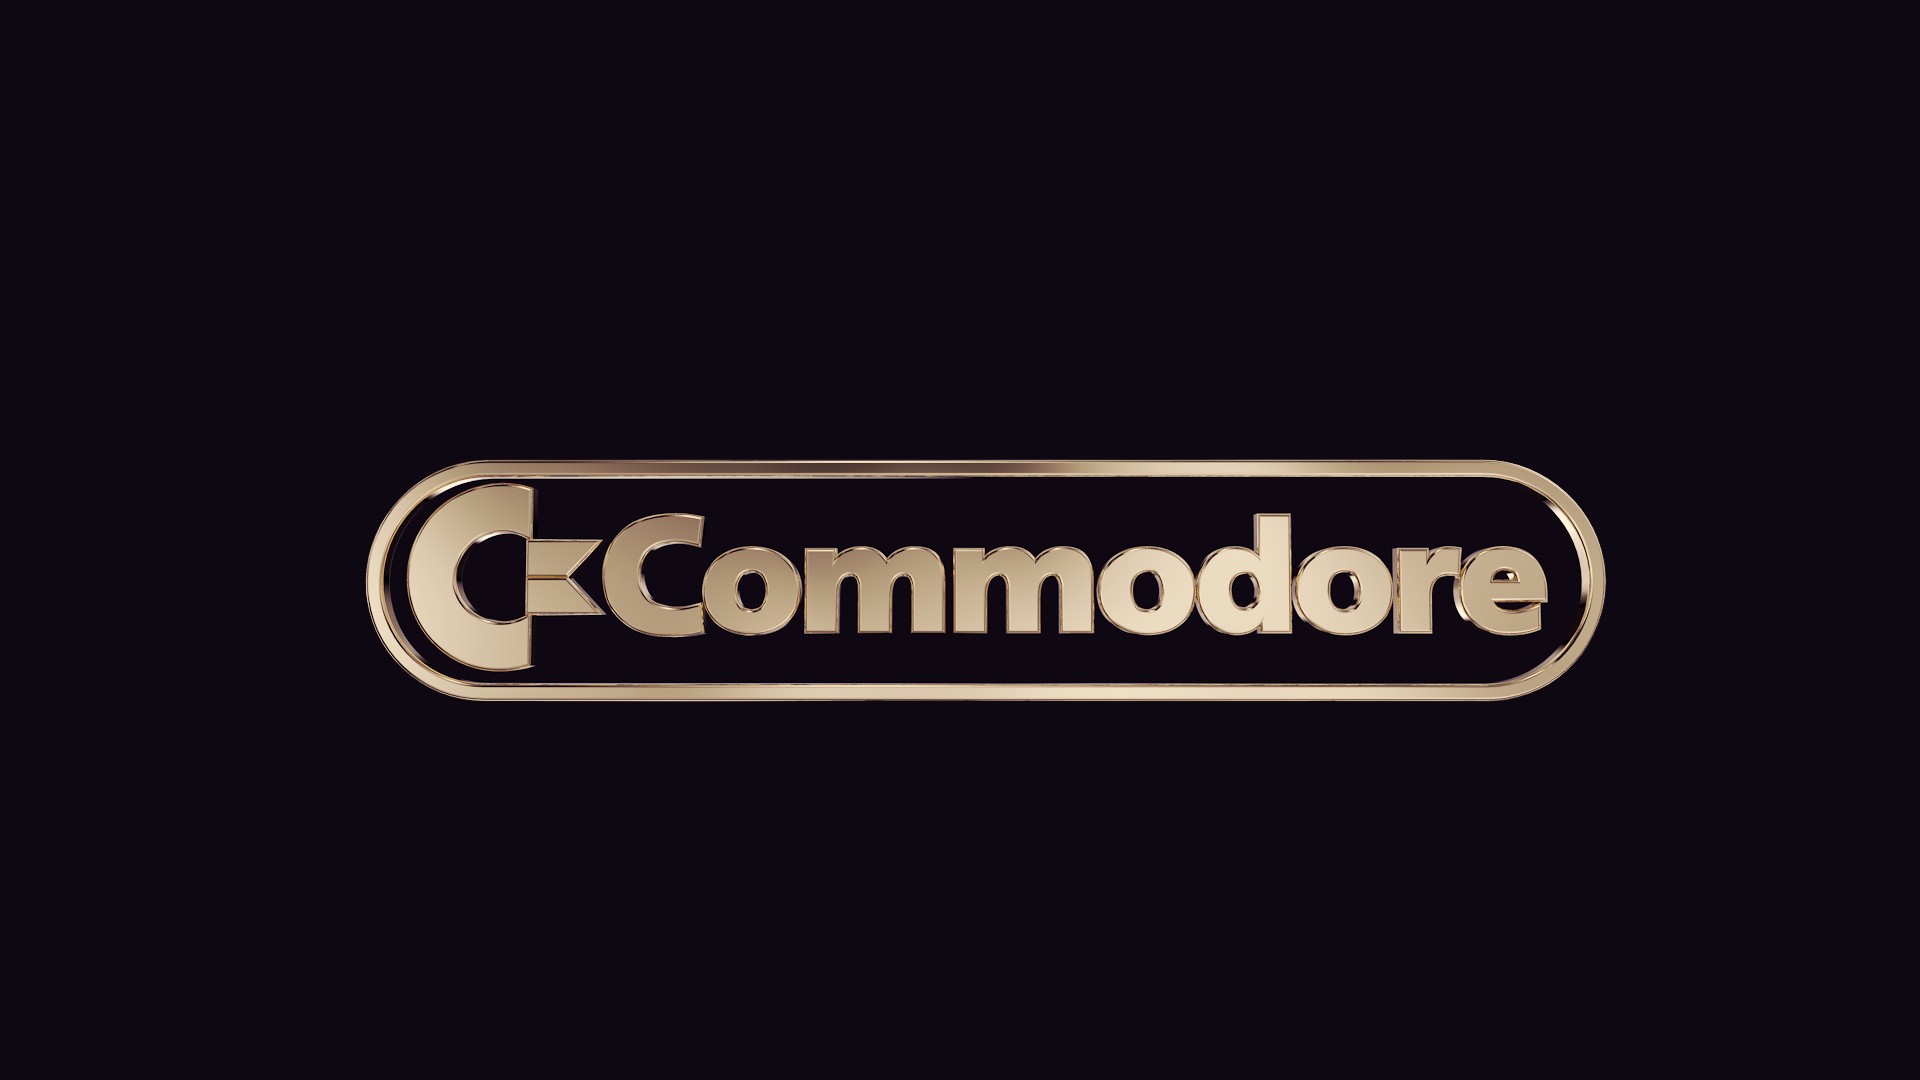 Commodore, Commodore 64 Wallpaper